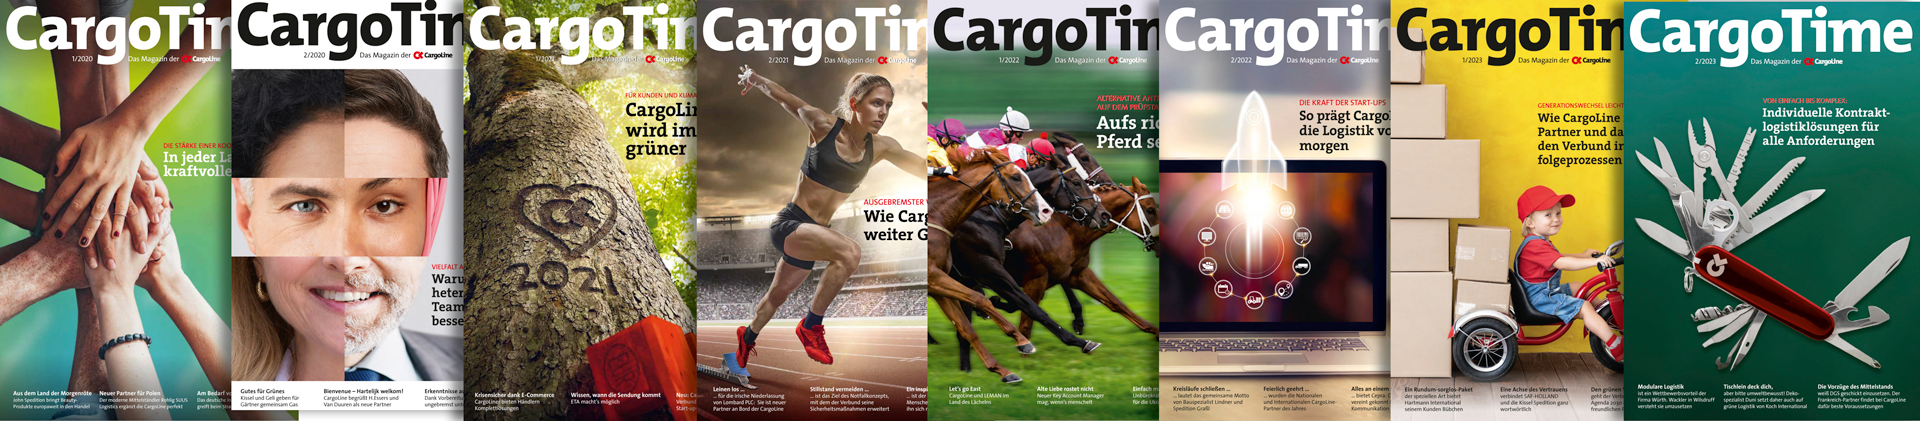 Kundenzeitschrift CargoTime